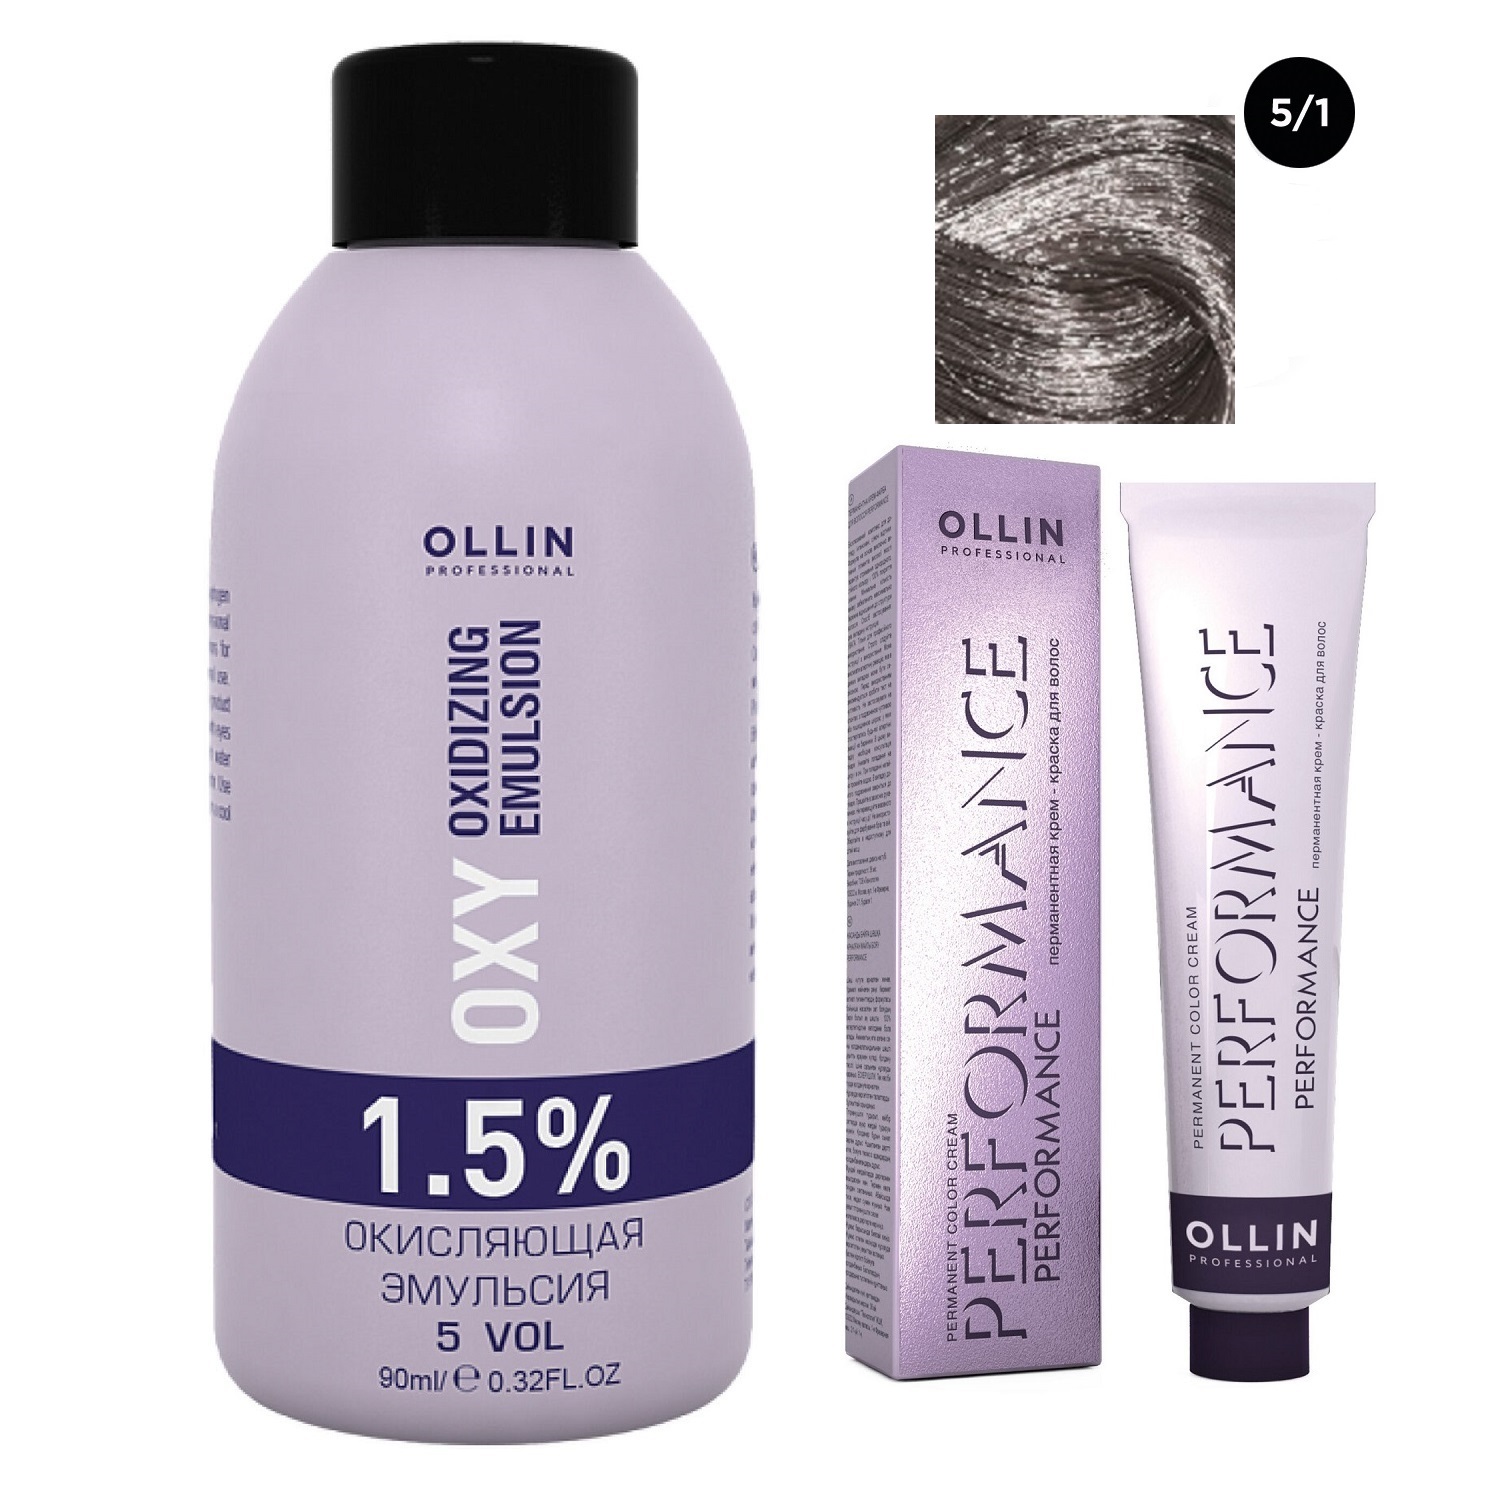 Ollin Professional Набор Перманентная крем-краска для волос Ollin Performance оттенок 5/1 светлый шатен пепельный 60 мл + Окисляющая эмульсия Oxy 1,5% 90 мл (Ollin Professional, Performance) окисляющая крем эмульсия ollin megapolis 5 5% 75 мл